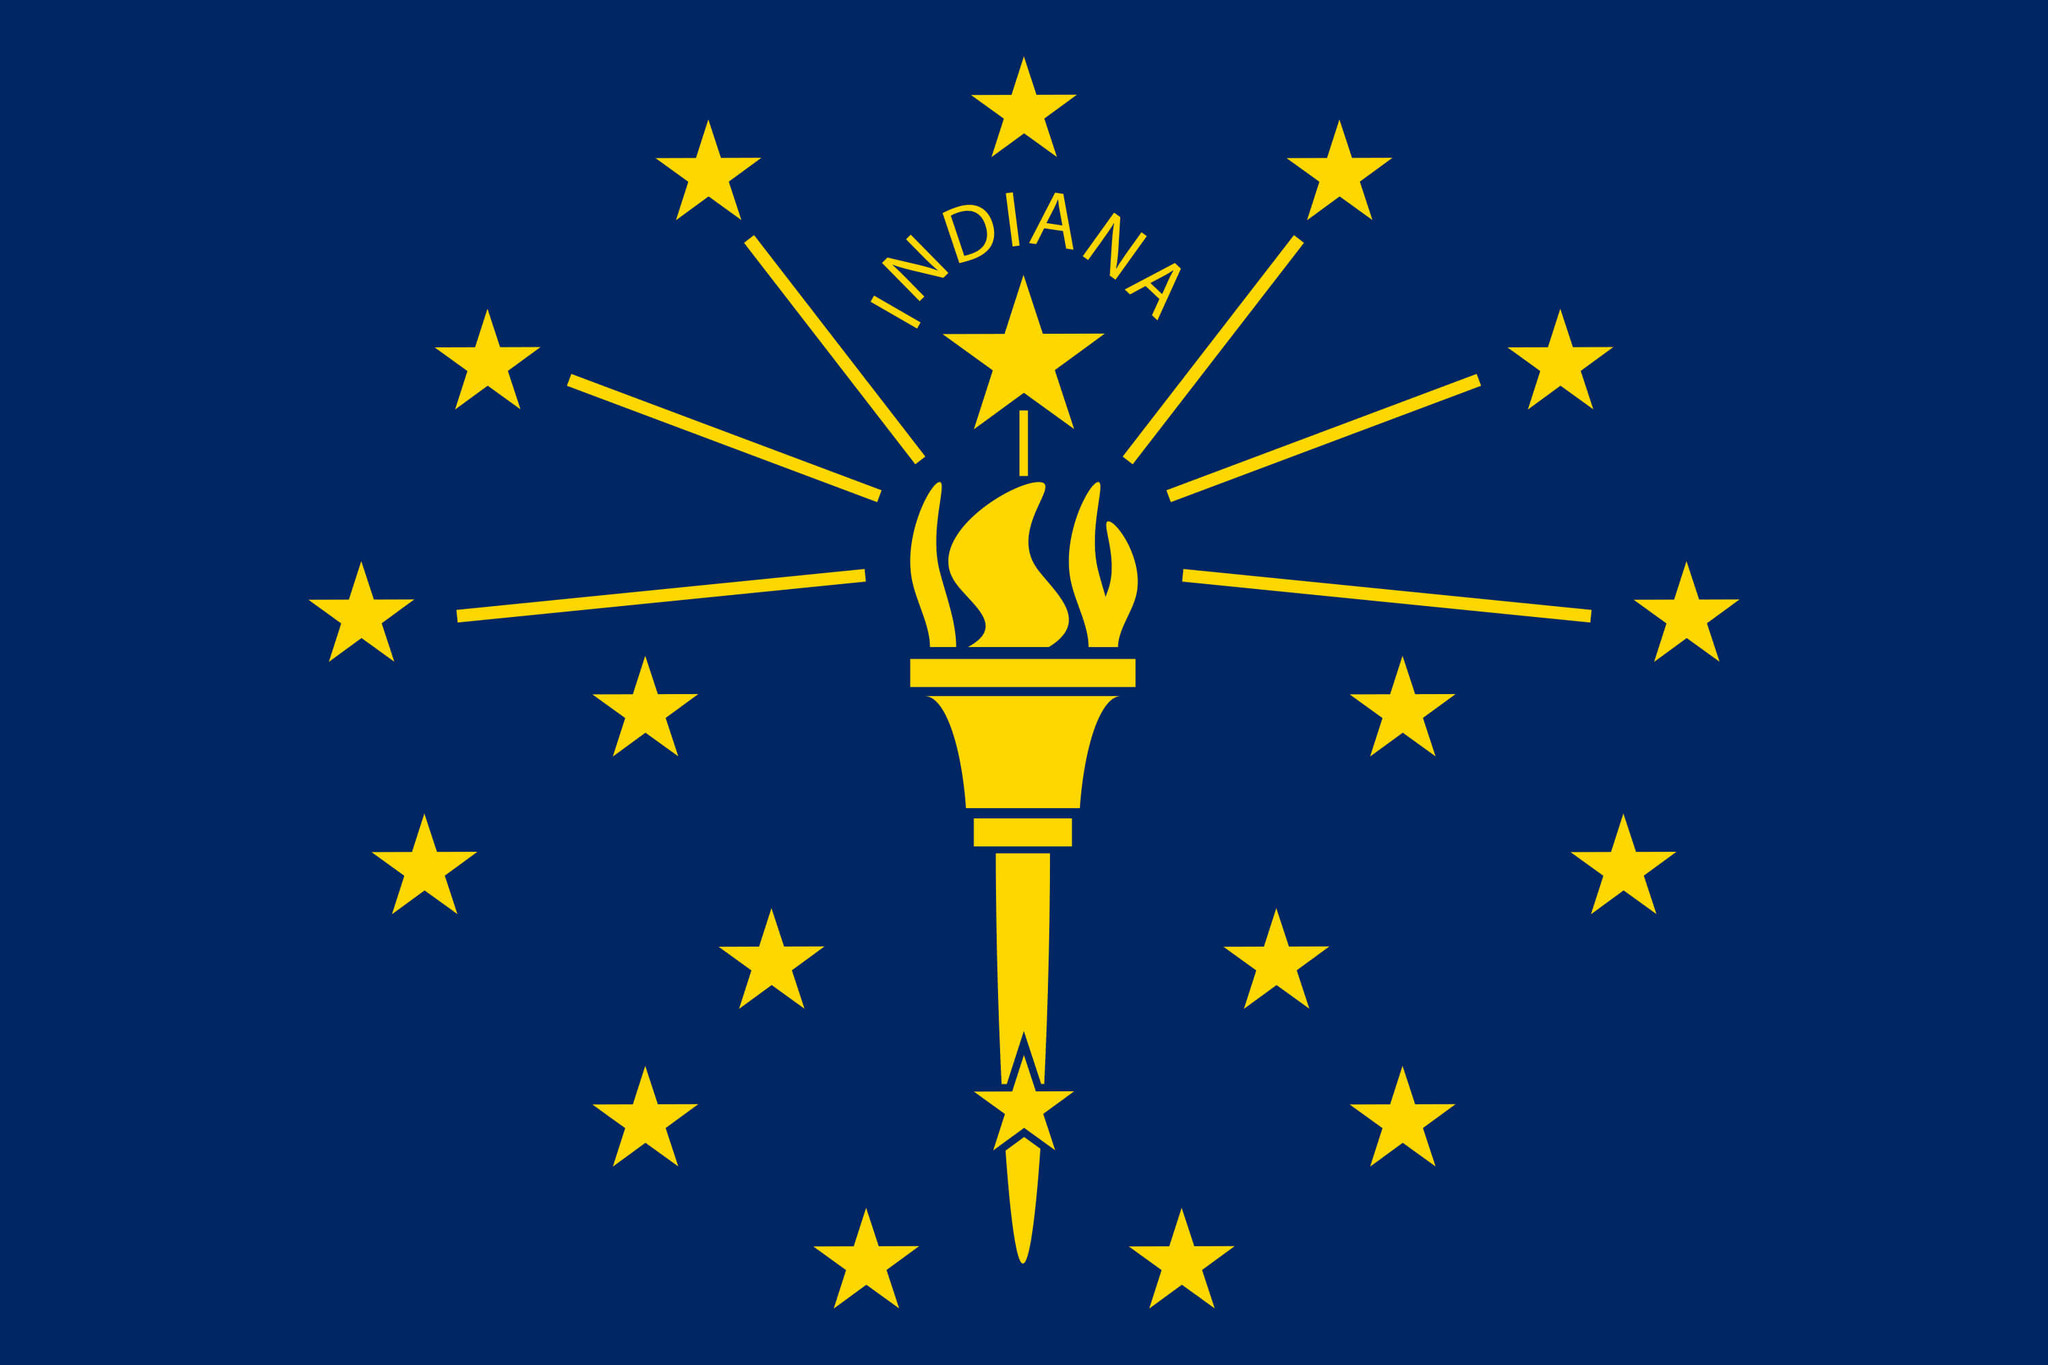 Flagge von Indiana Bild und Bedeutung Indiana-Flagge ...